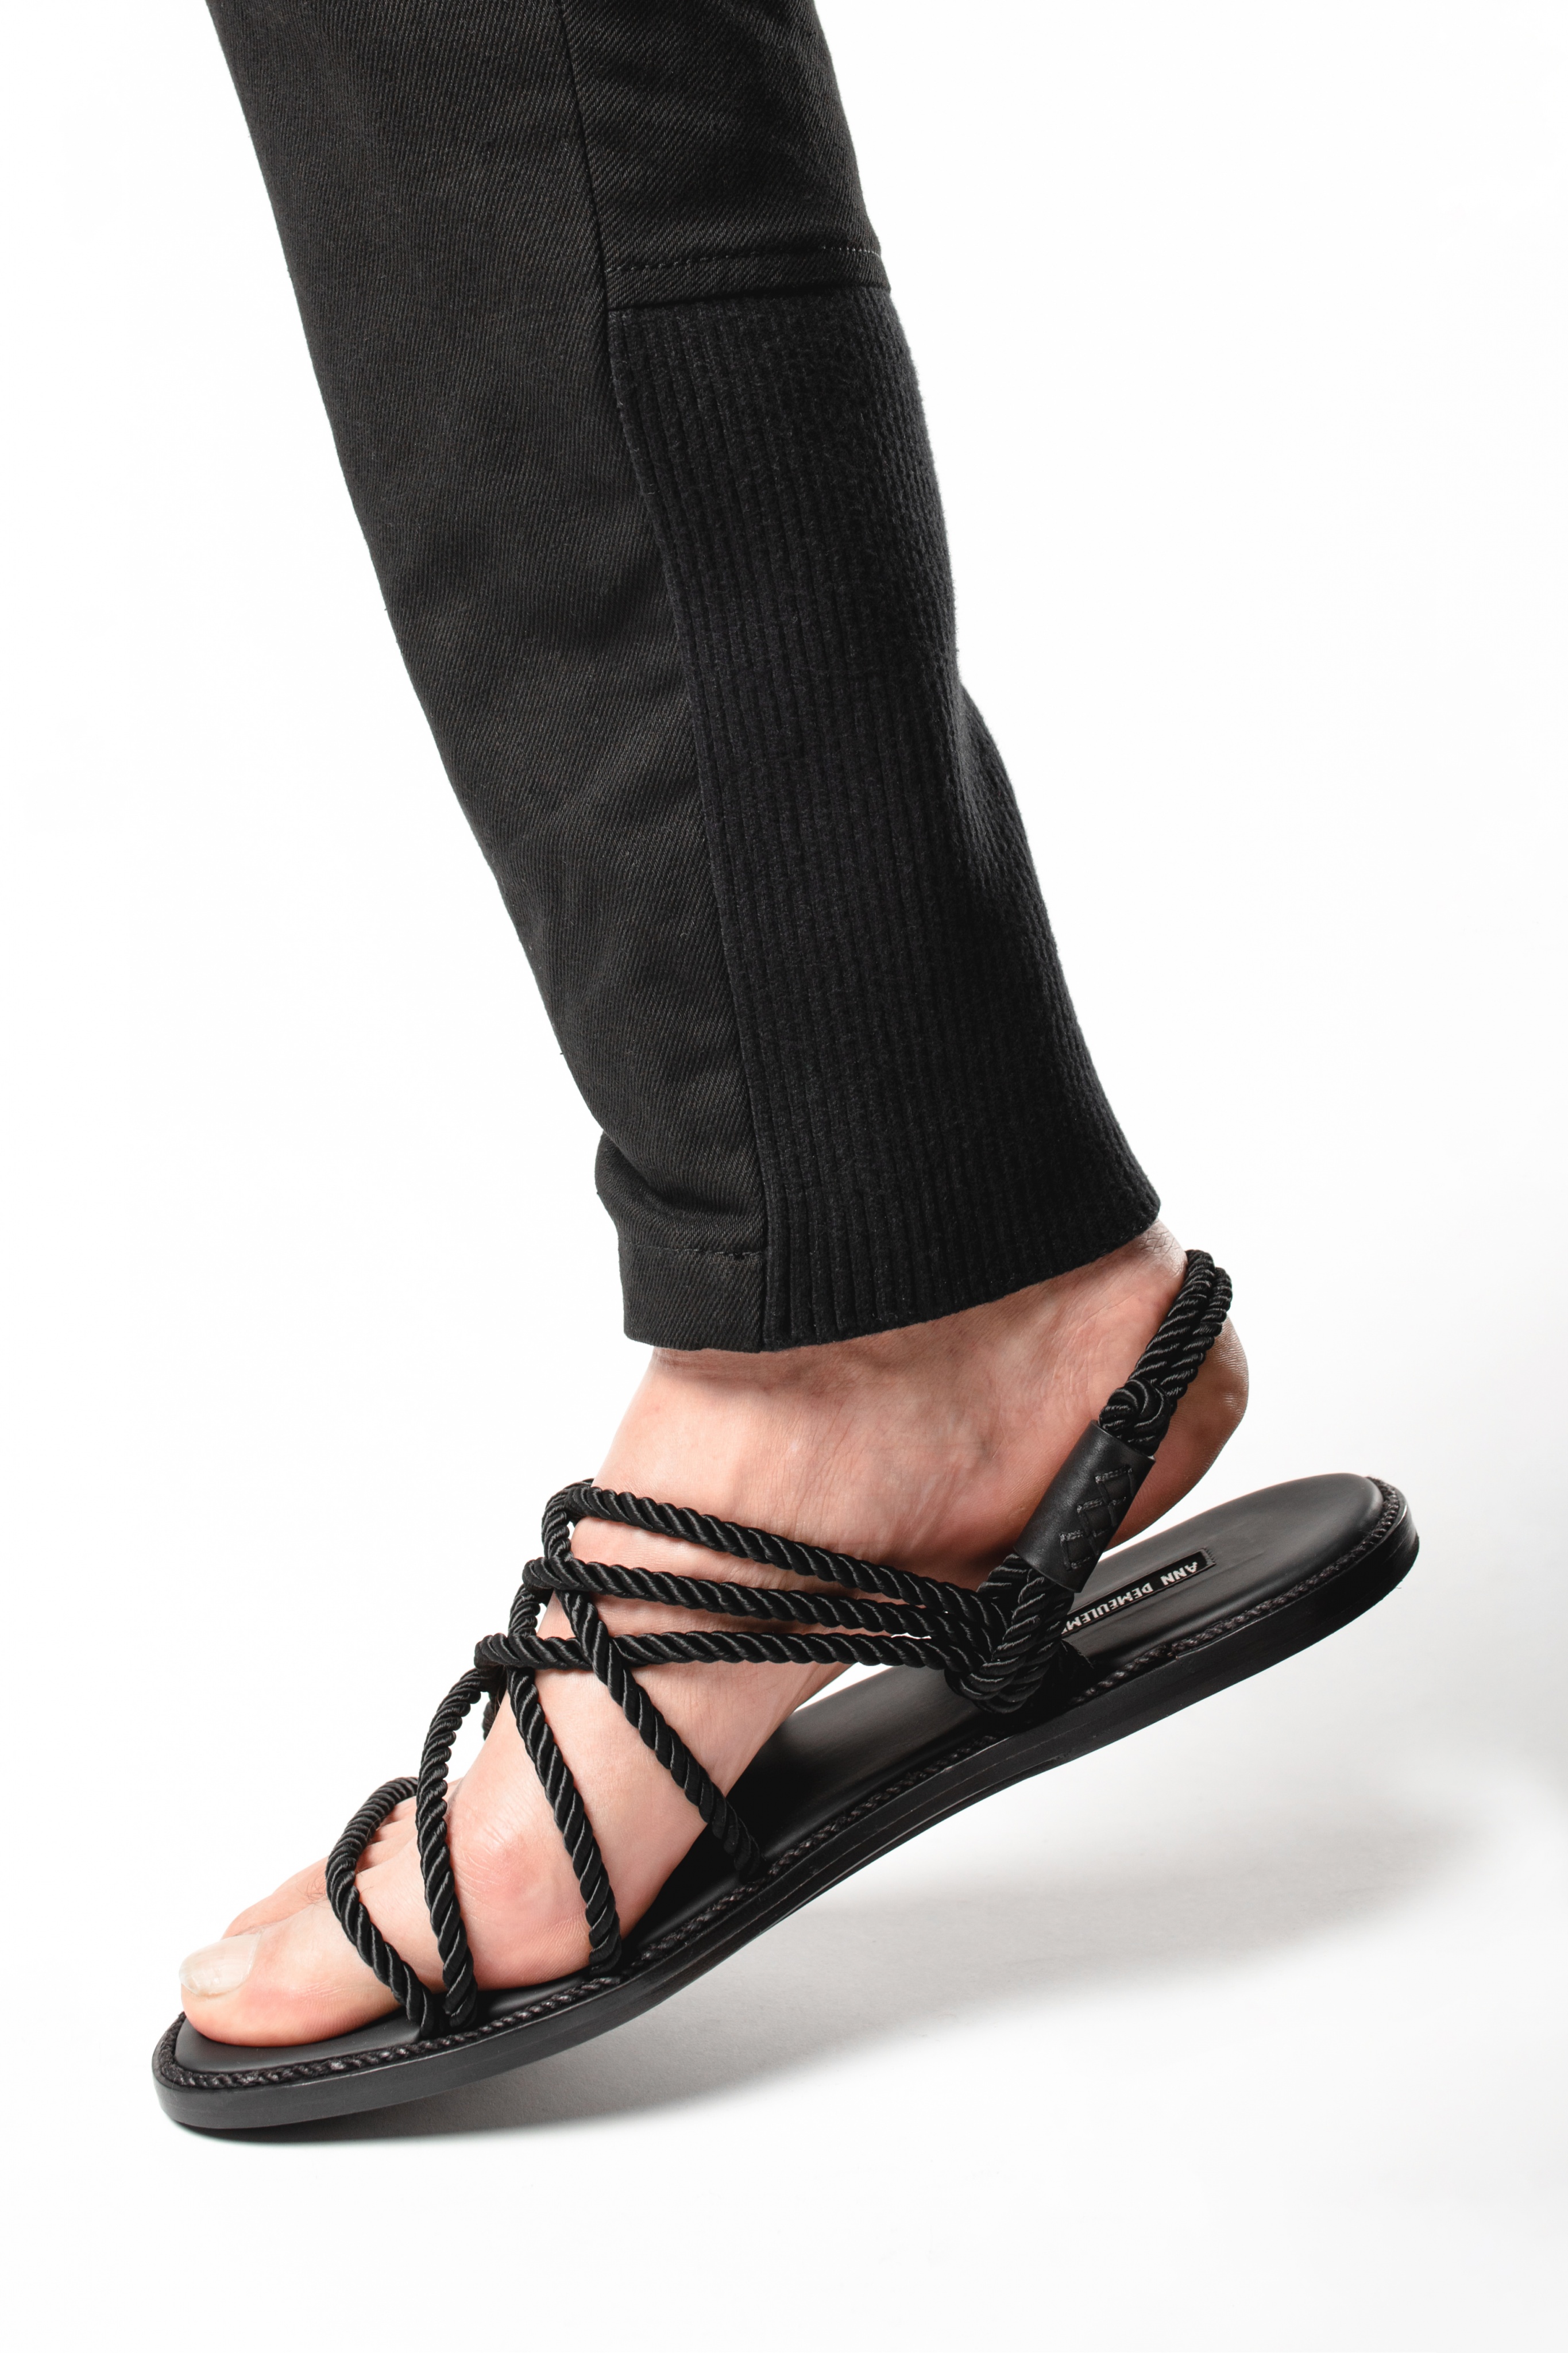 Veraangenamen stopcontact Aankondiging Ann Demeulemeester Rope and Leather Sandals (Tuscon Nero) | Elixirgallery